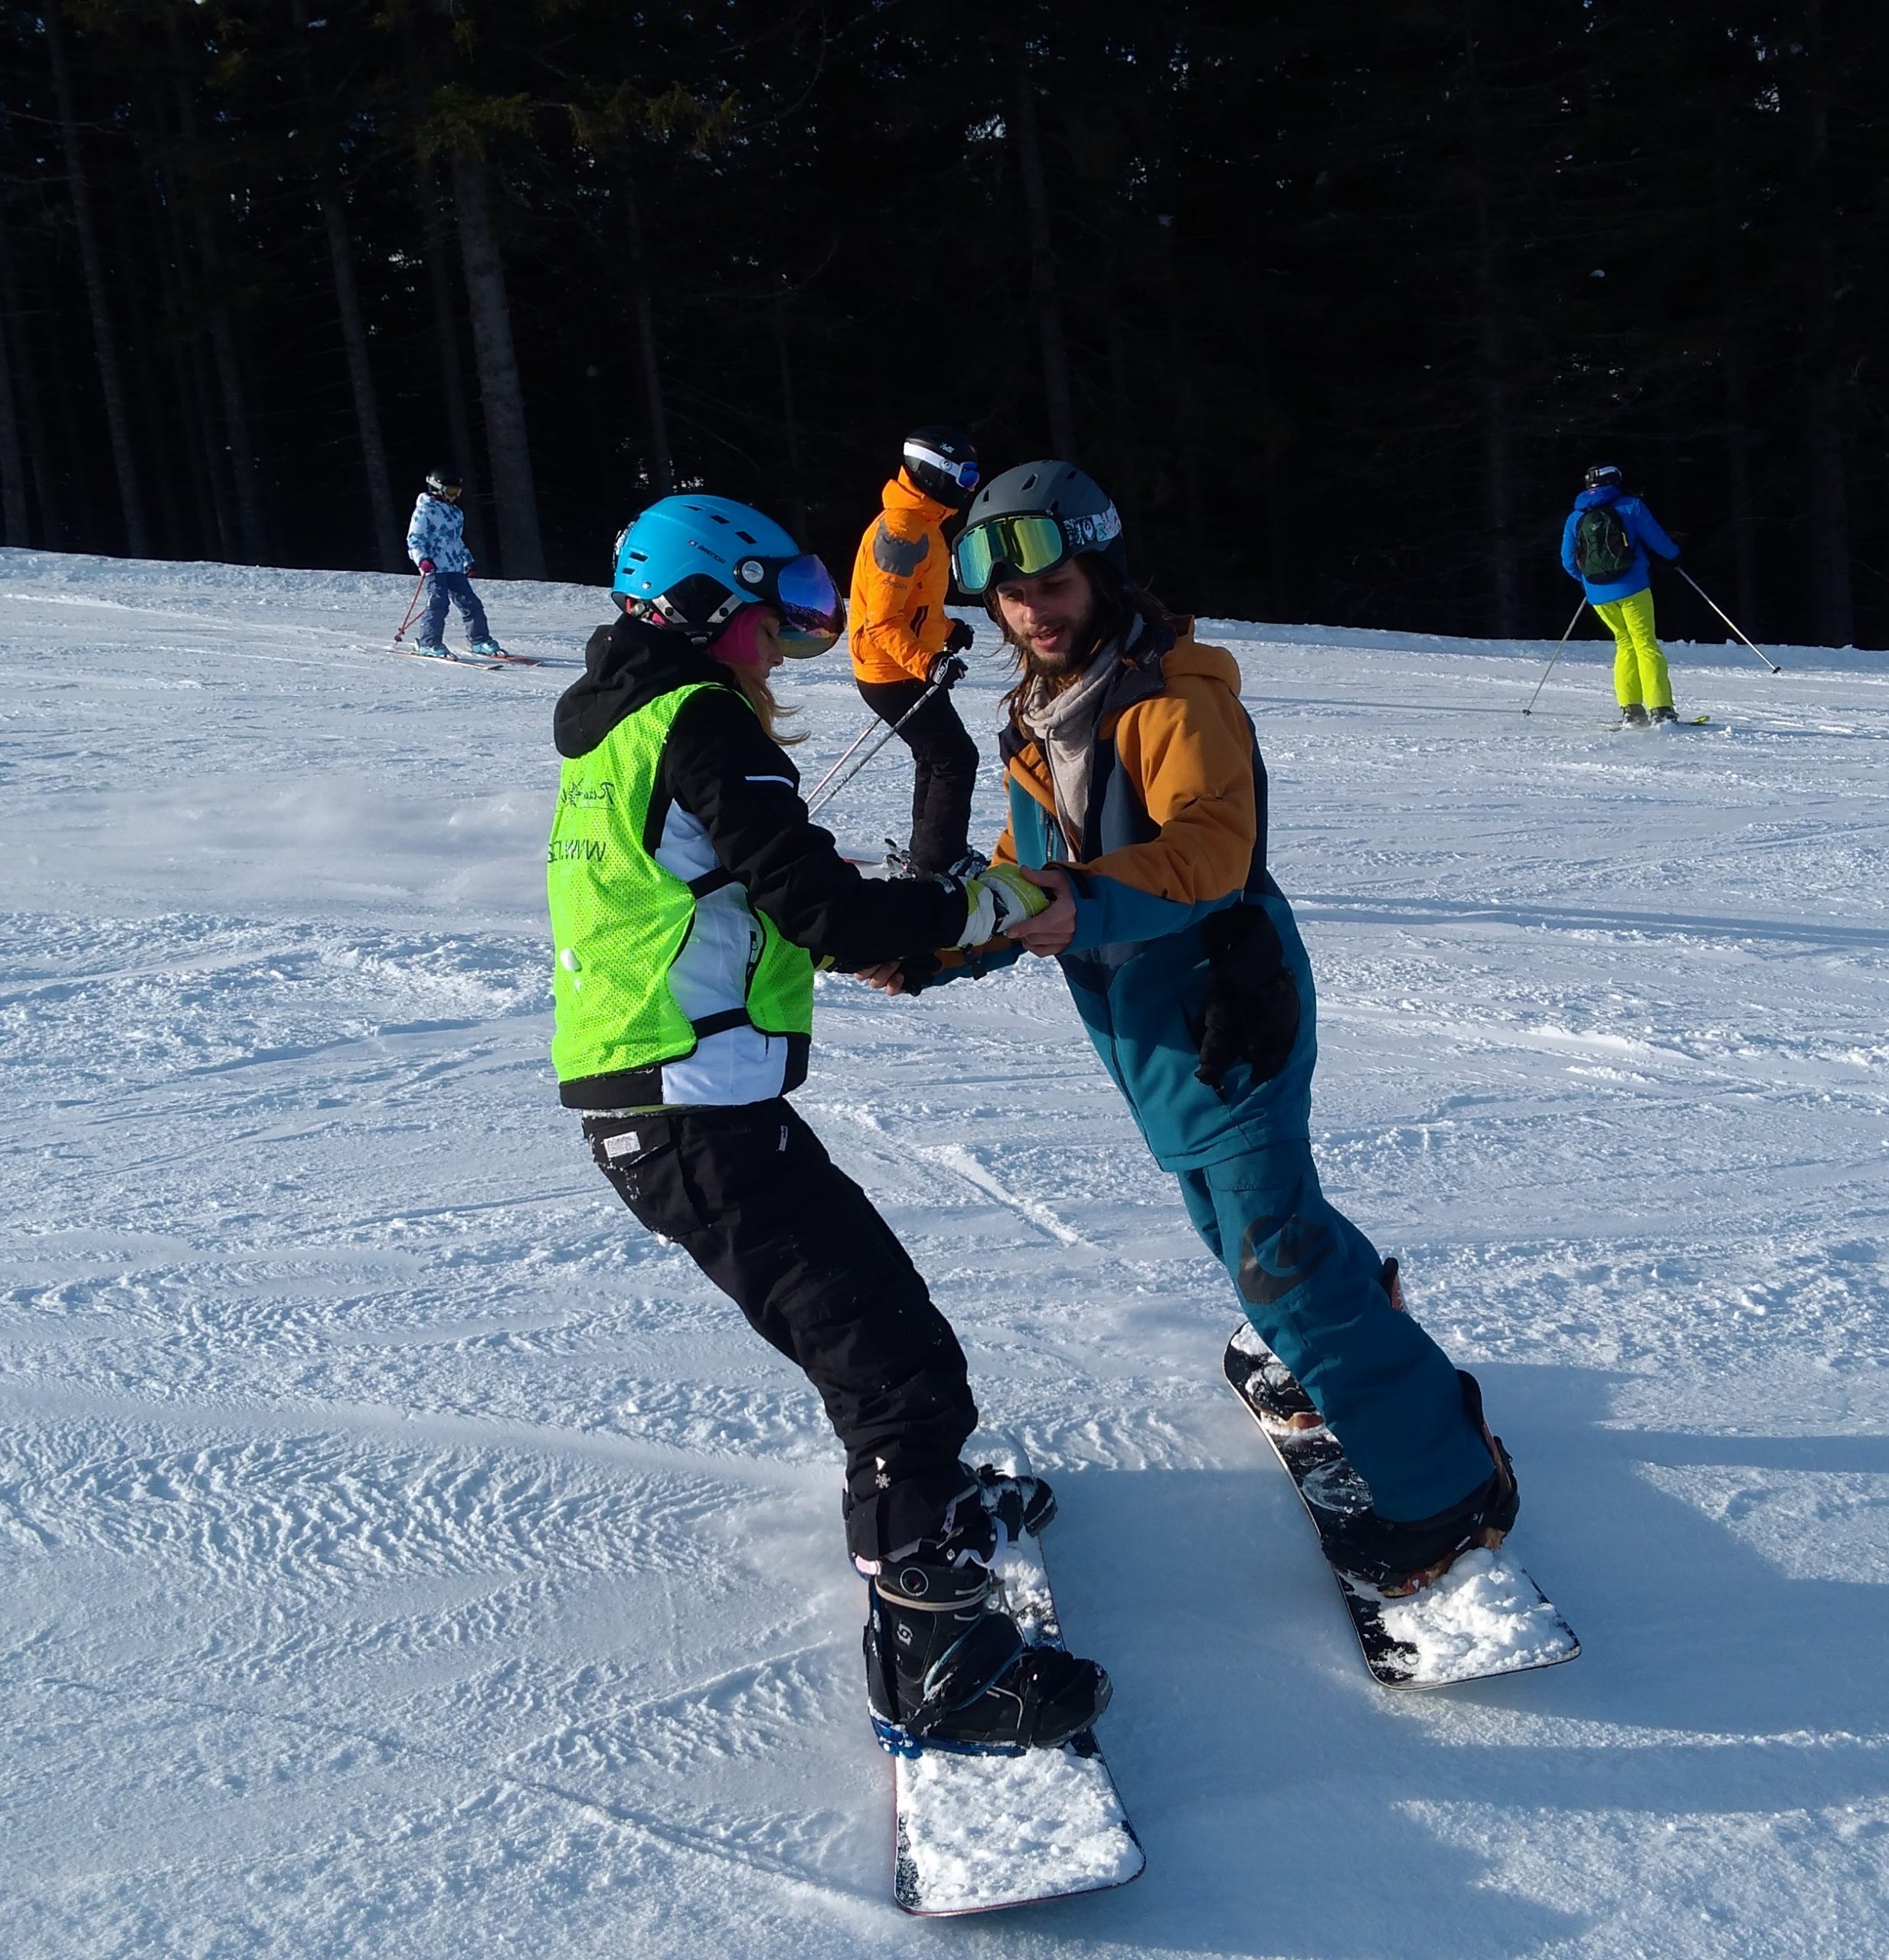 <Strong></noscript>Instruktor snowboardu</strong><br />
Instruktor snowboardu z wieloletnim doświadczeniem, pasjonat sportów zimowych, specjalizujący się w nauczaniu technik zarówno dla początkujących, jak i zaawansowanych snowboardzistów. Dba o indywidualne podejście do każdego ucznia, dbając o ich bezpieczeństwo i postępy na stoku.